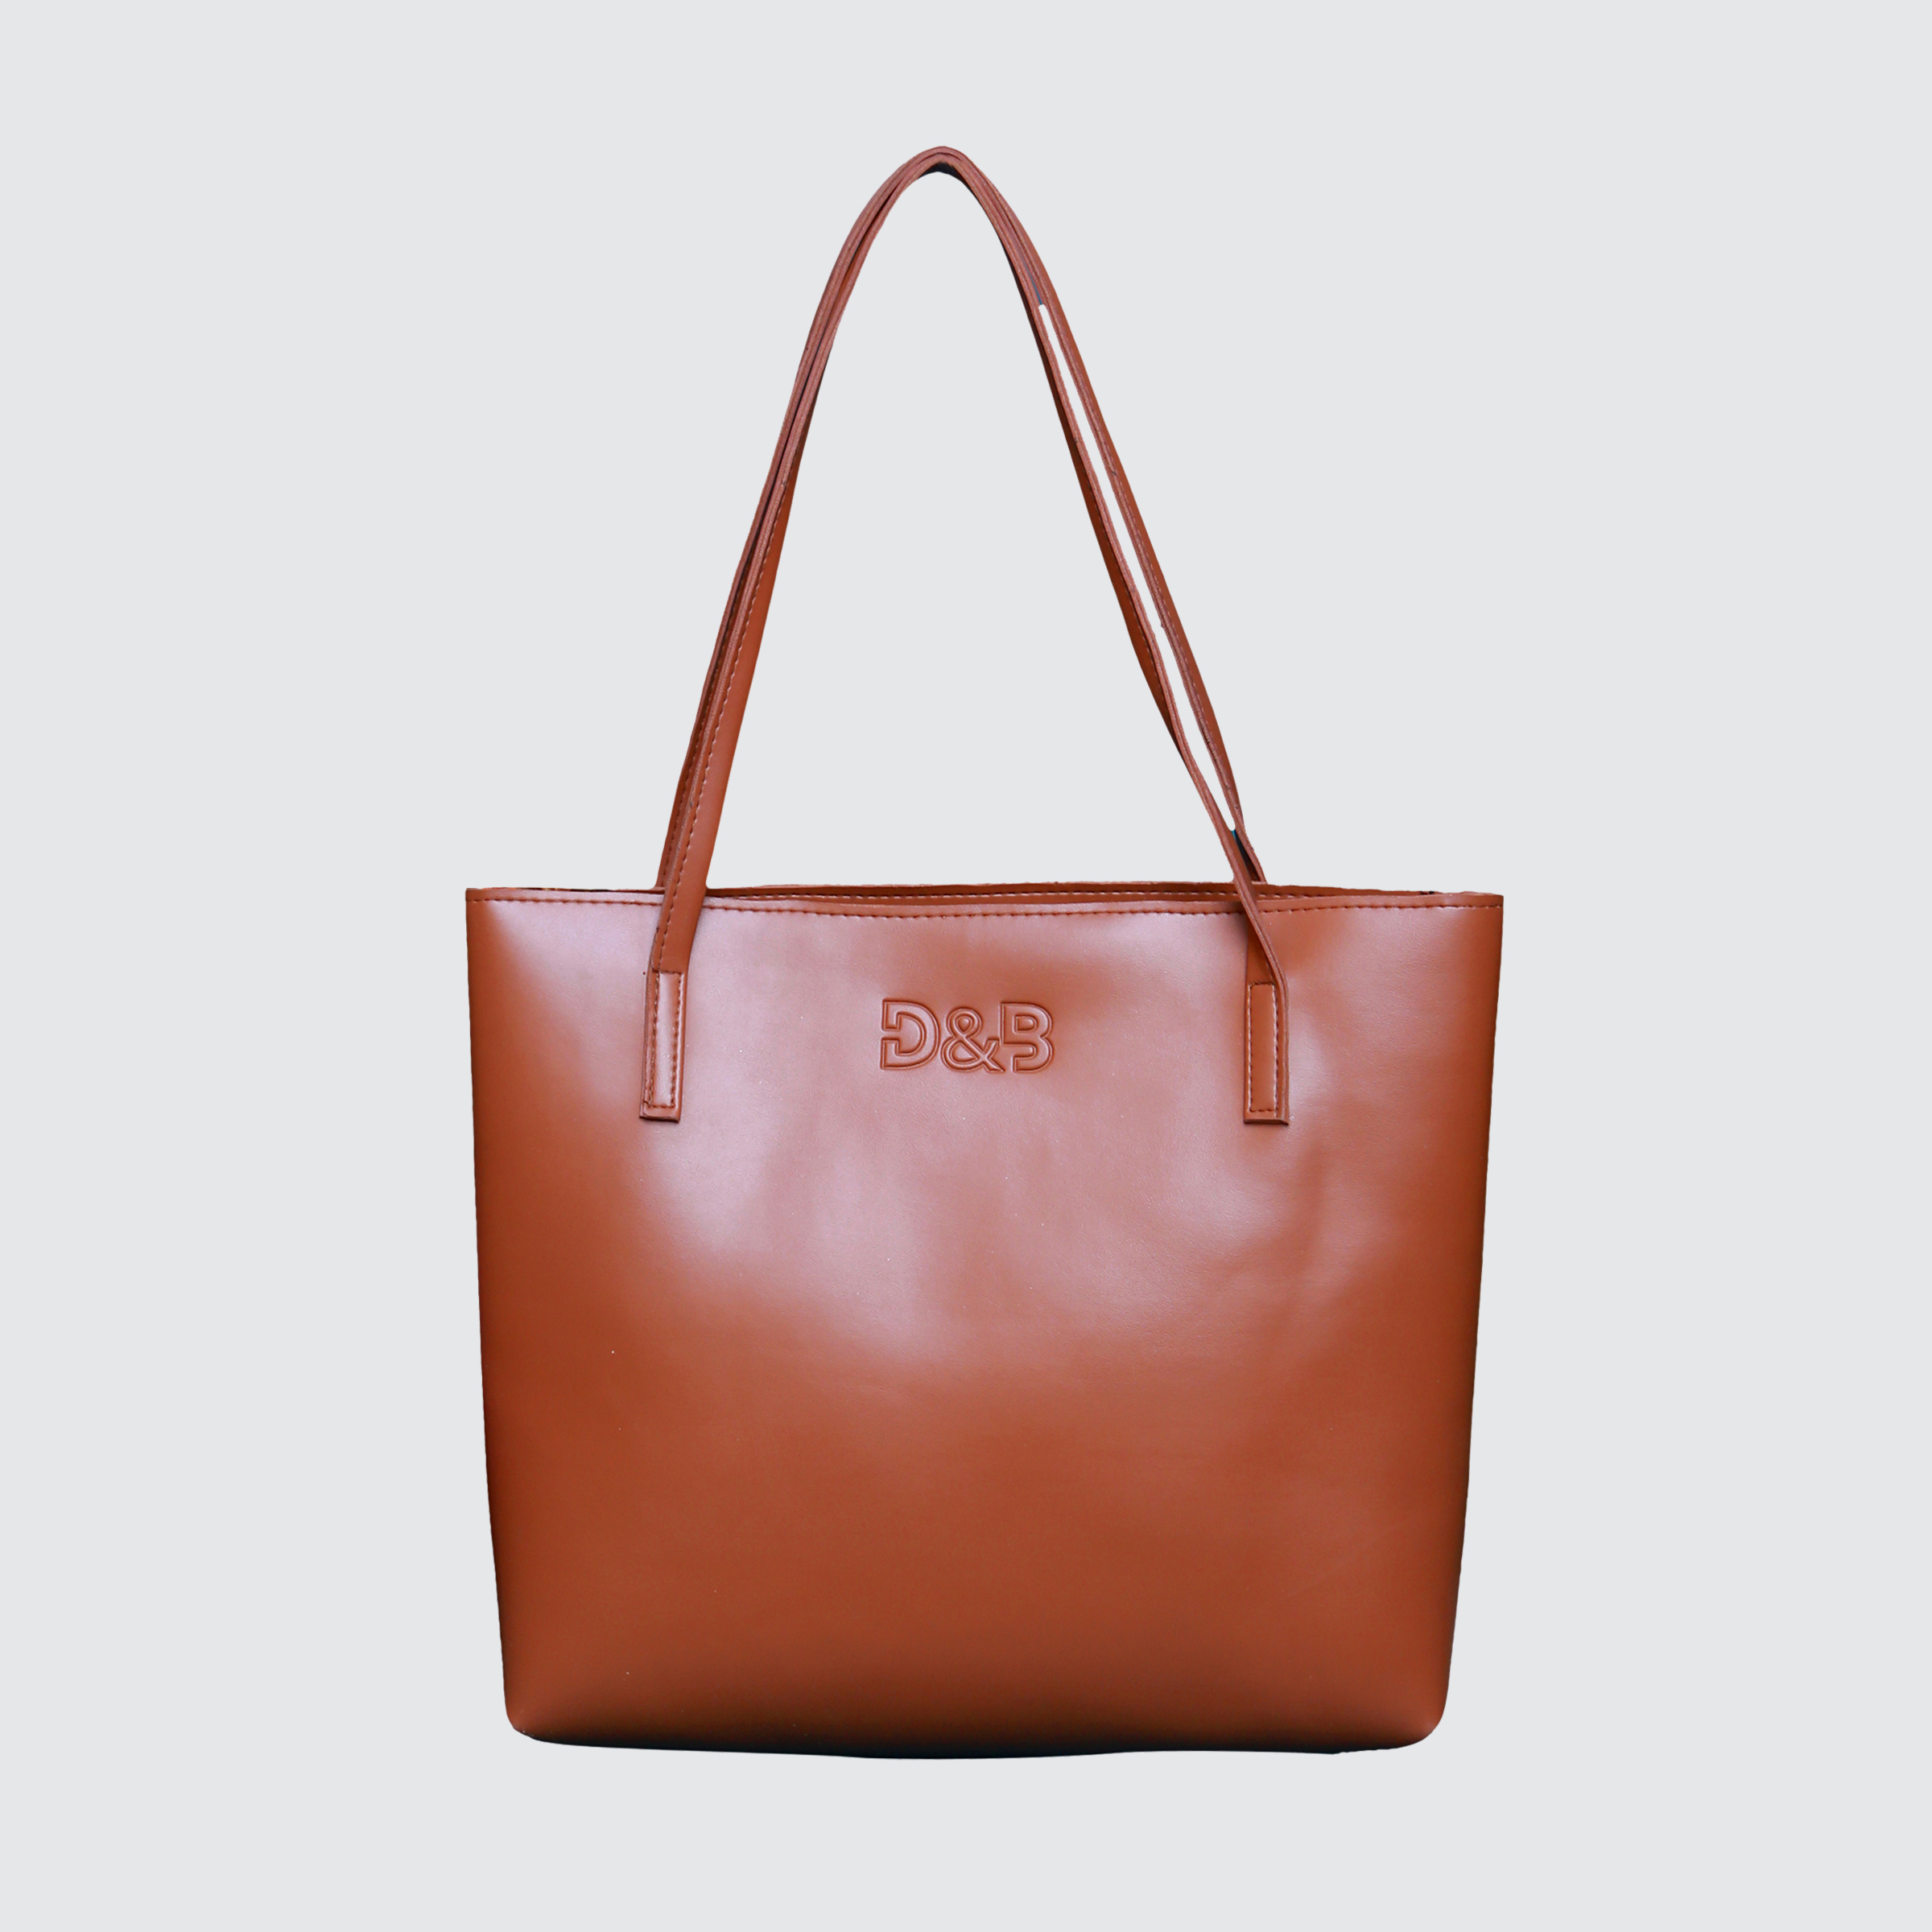 Ladies Bags, Totes & Crossbody Bags - D&B Fashion Bags